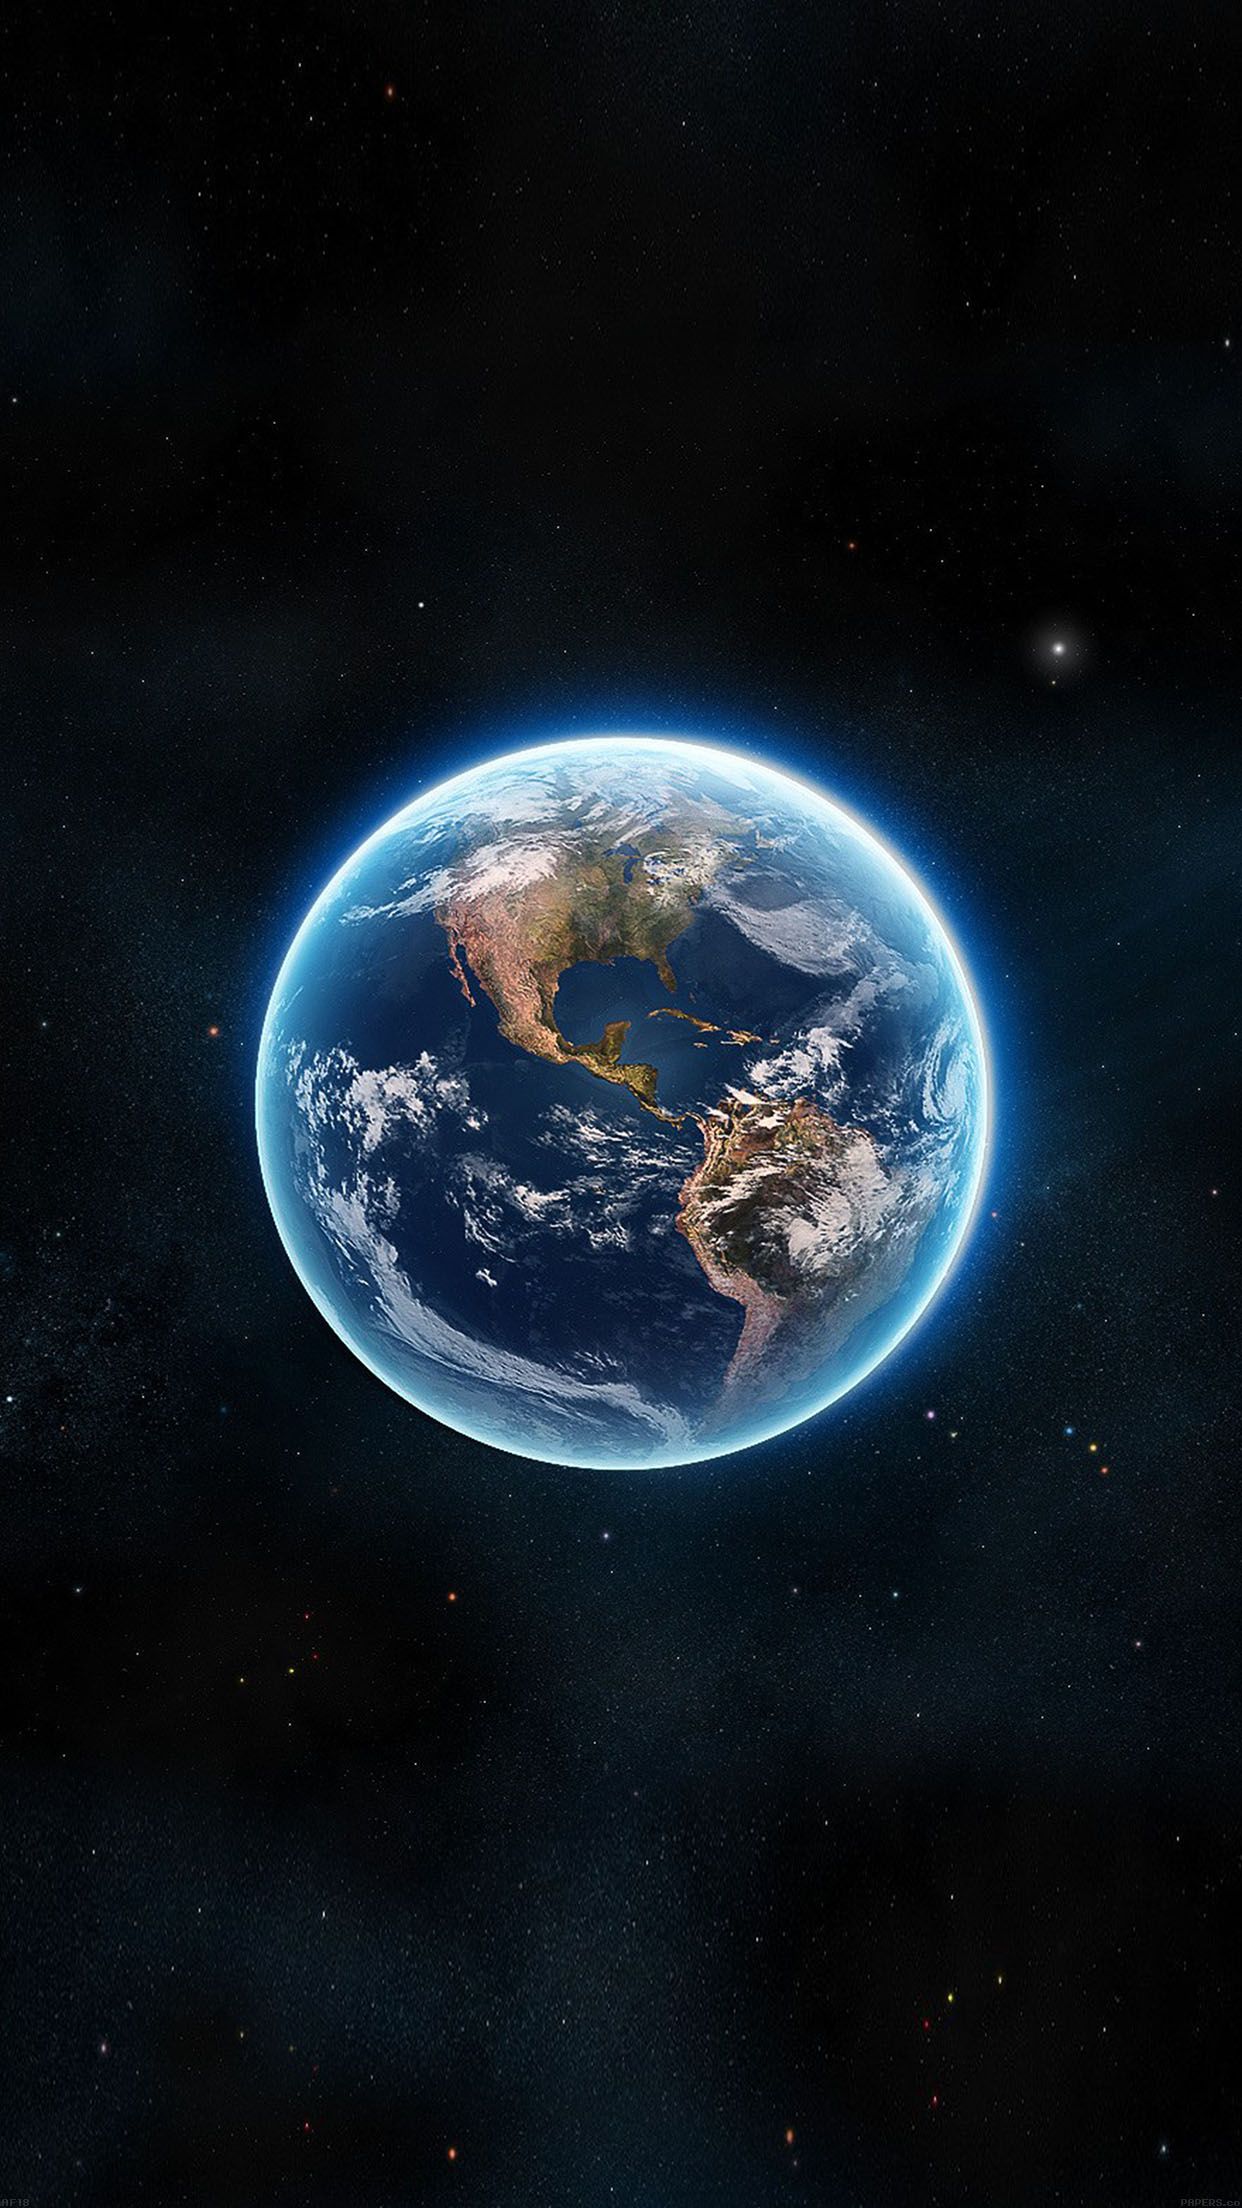 tierra desde el espacio fondo de pantalla hd,espacio exterior,atmósfera,objeto astronómico,planeta,tierra